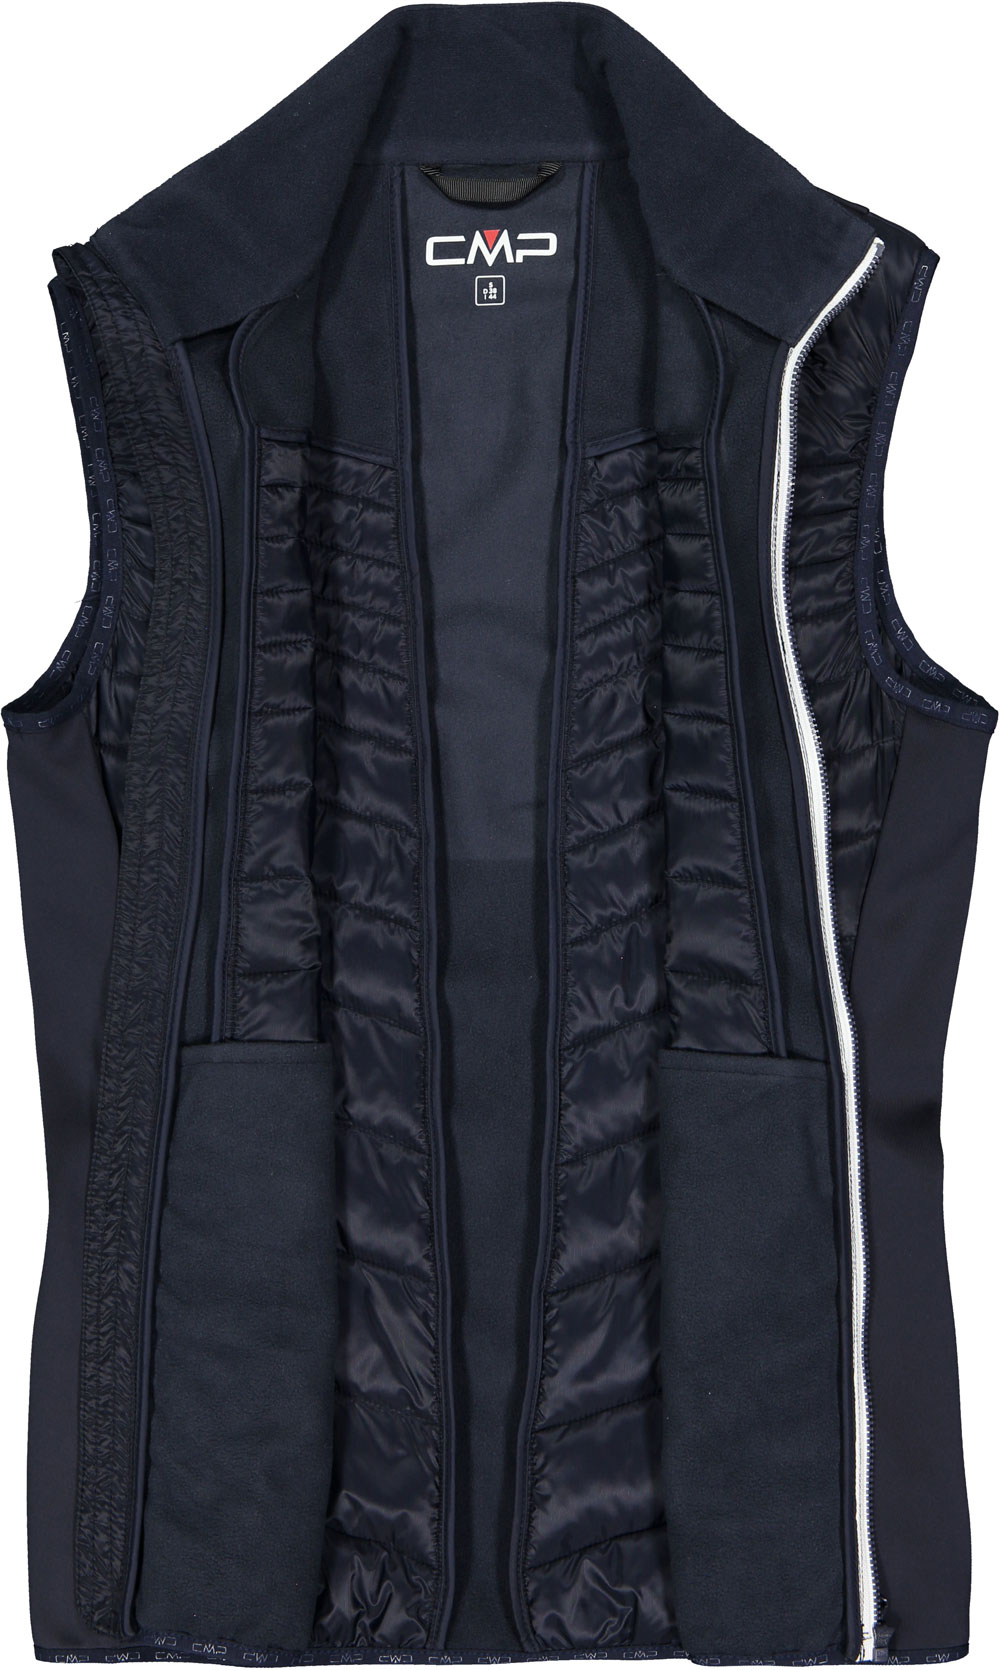 Women's winter vest